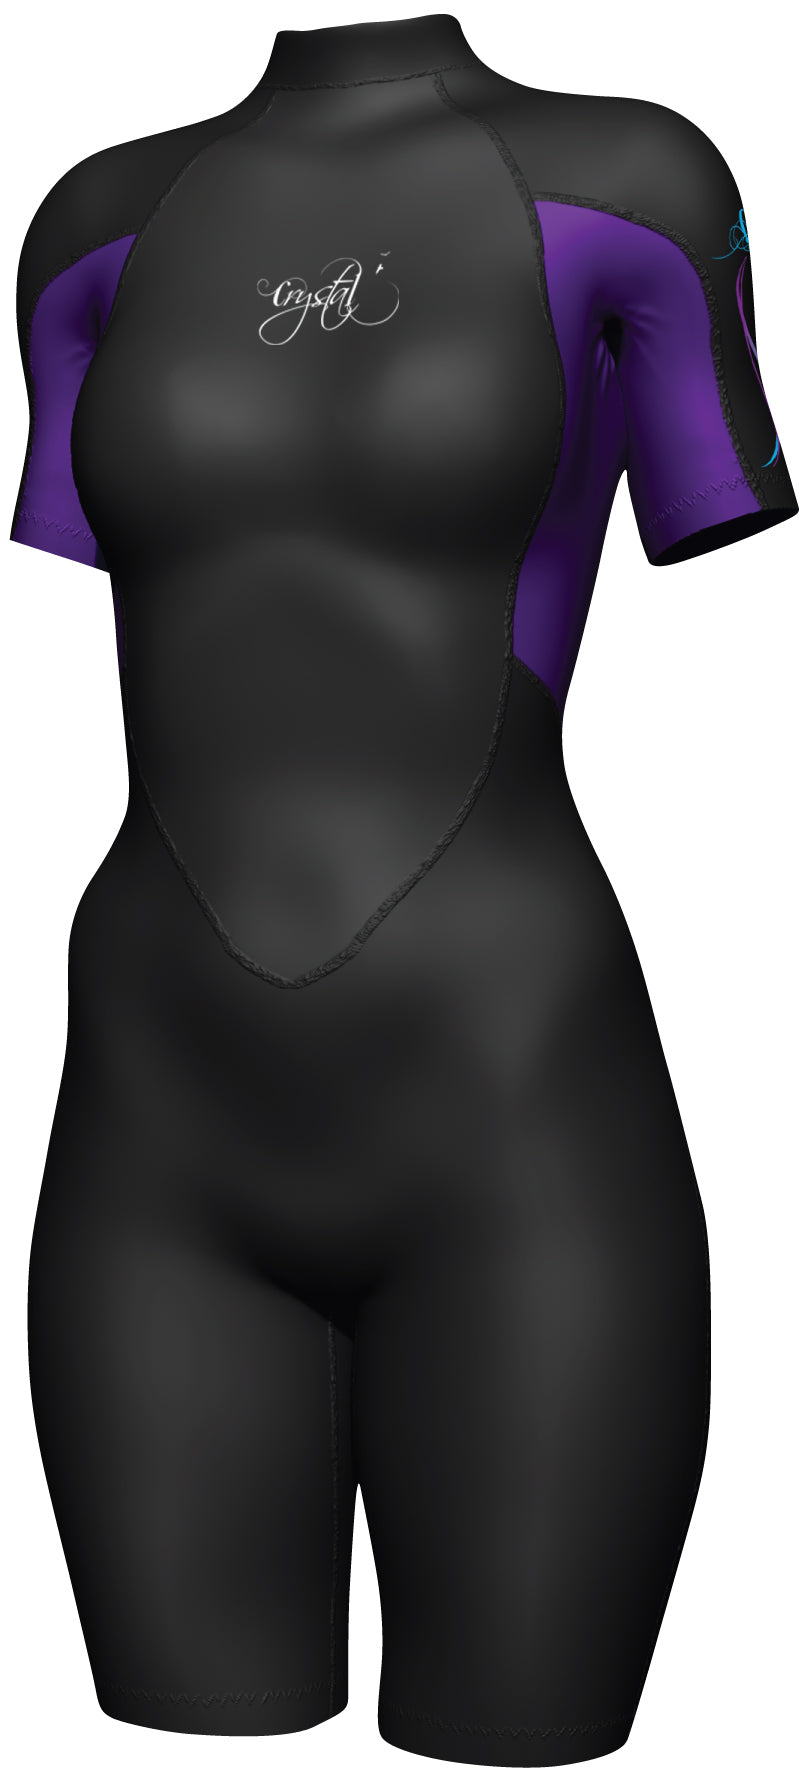 Womens 2mm Springsuit Womens Wetsuit - Black/Purple